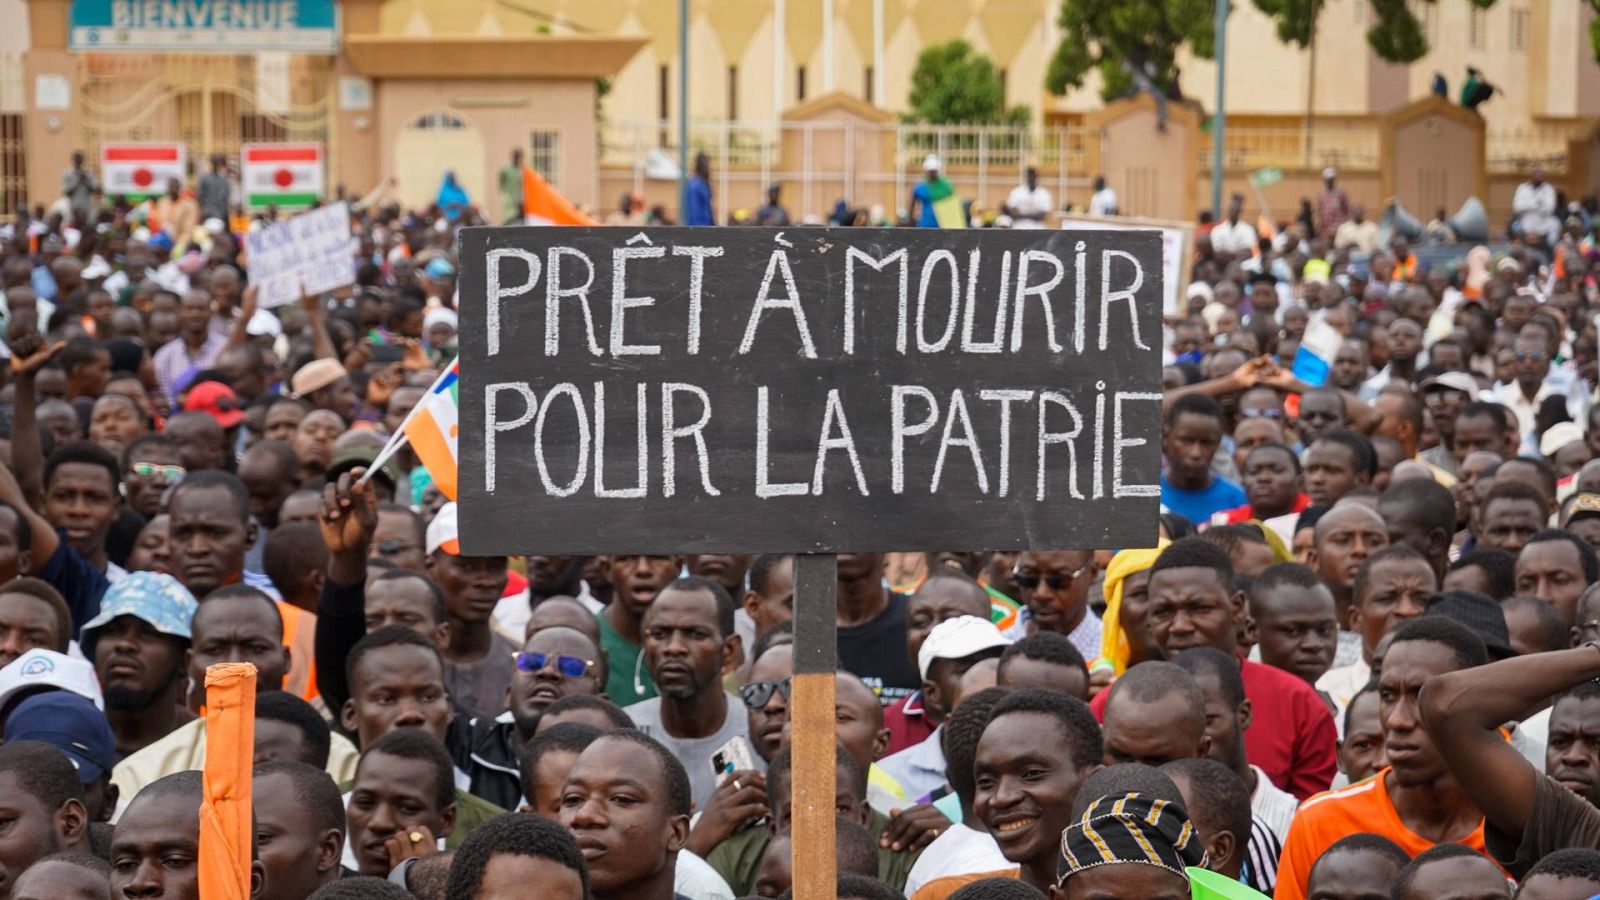 "Listos para morir por la patria", dice una pancarta durante una protesta contra una posible intervención militar en Niamey